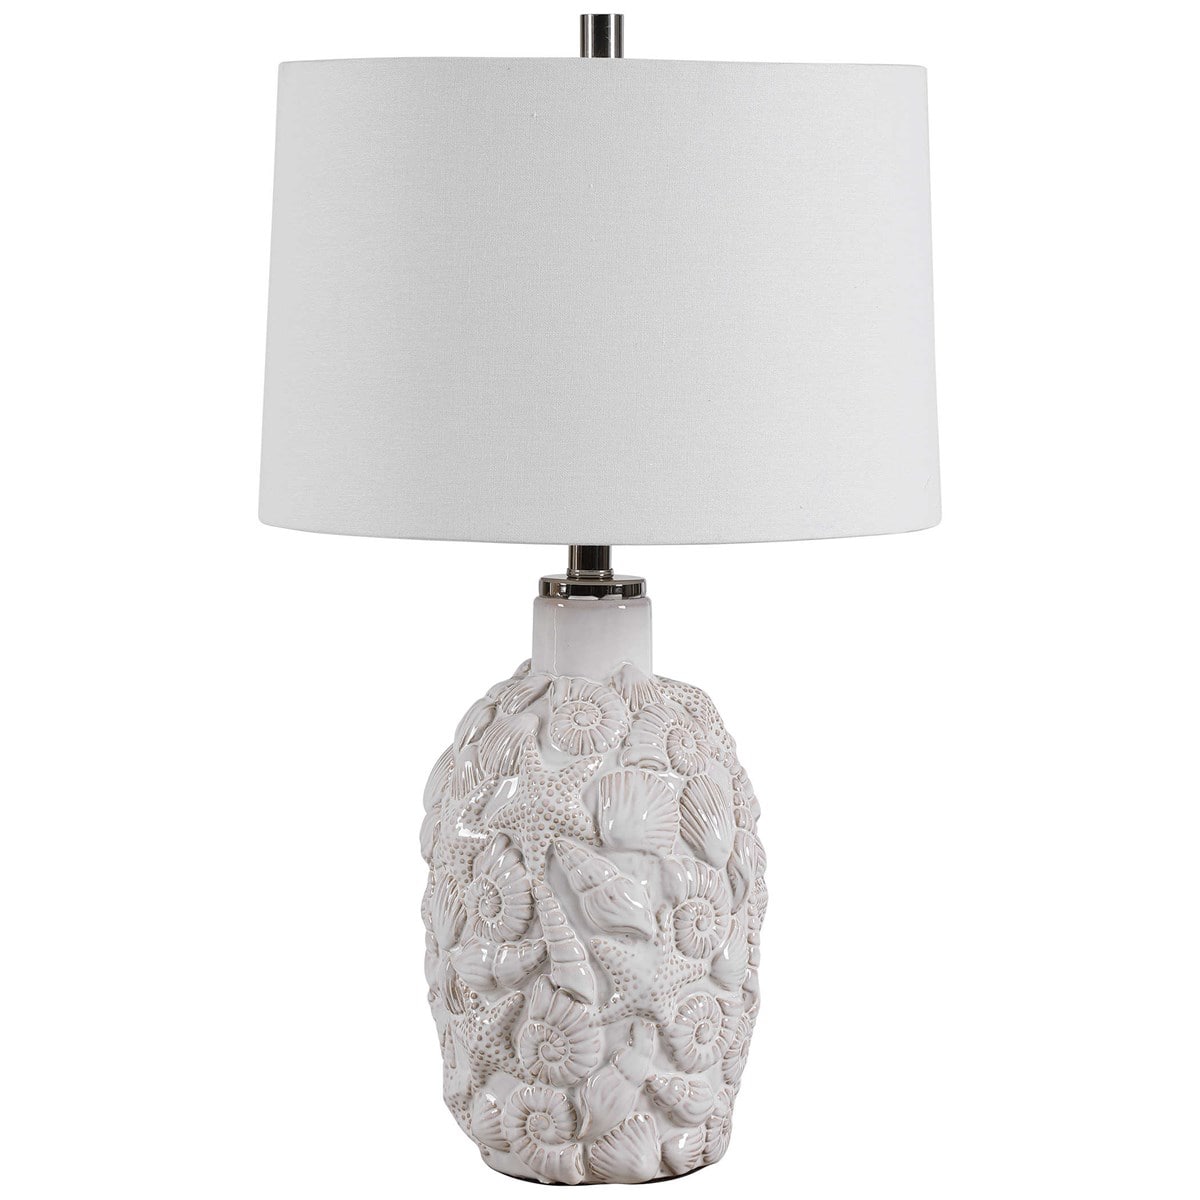 Modish Store White Ceramic Table Lamp | Table Lamps | Modishstore - 3